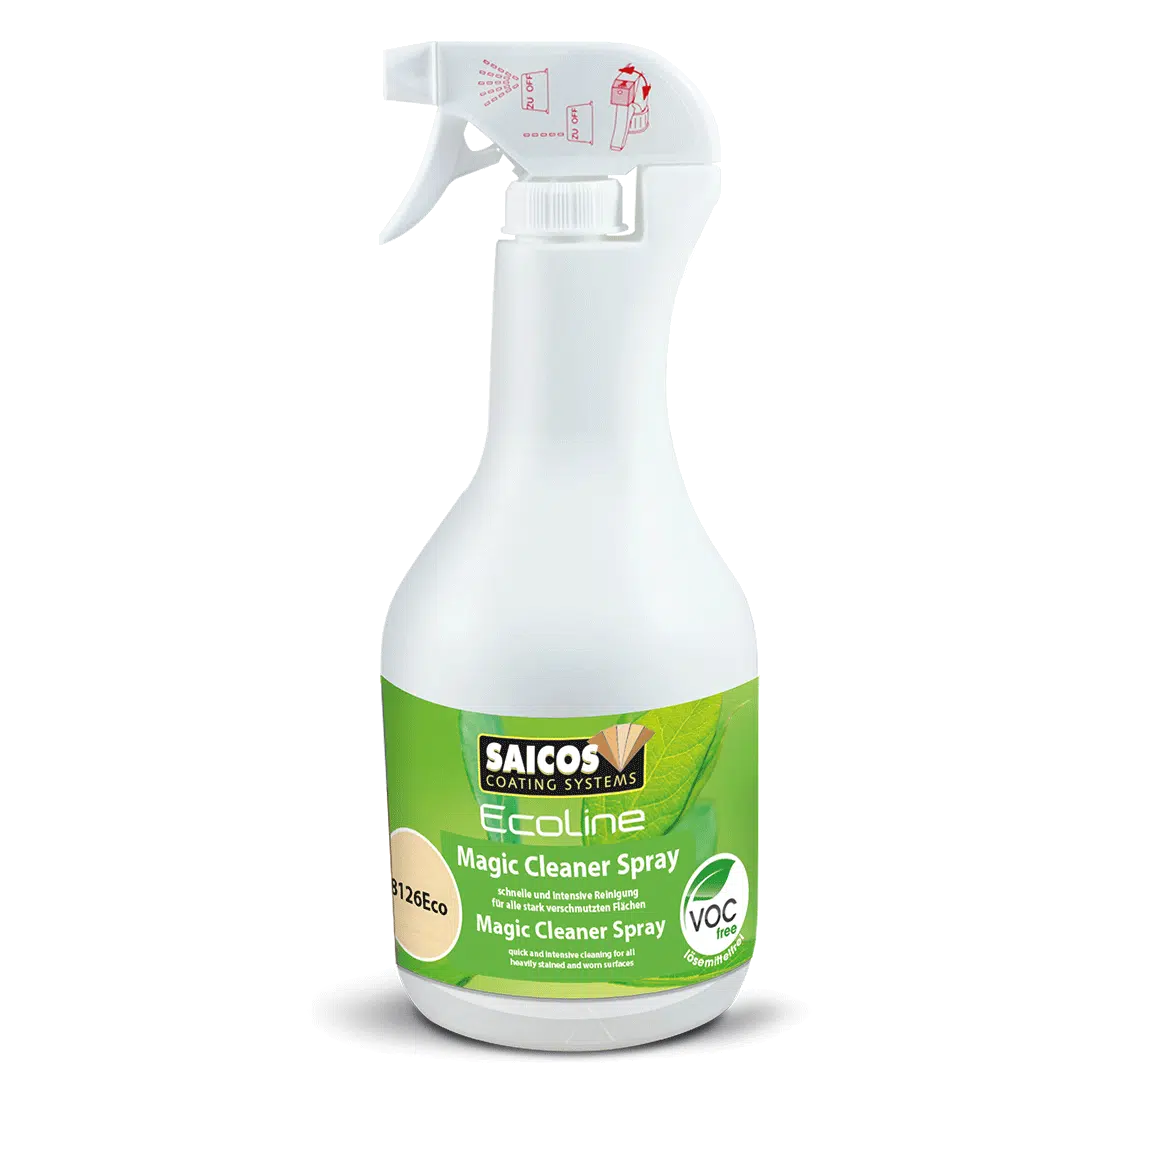 SAICOS Ecoline Magic Cleaner Spray